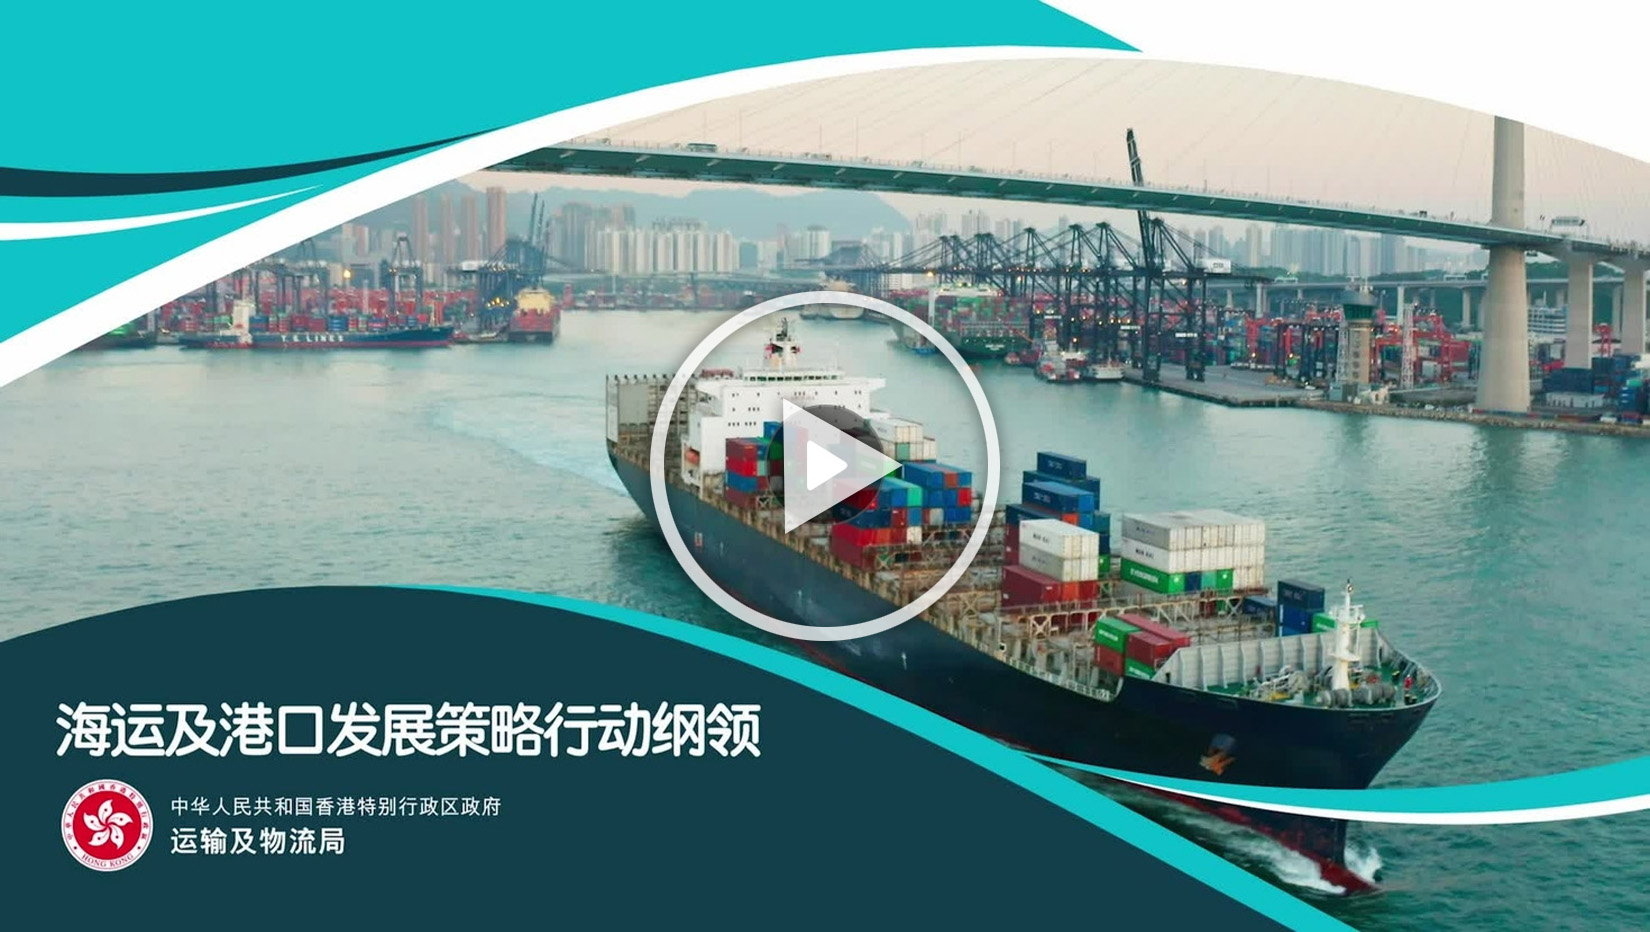 海运及港口发展策略行动纲领宣传短片